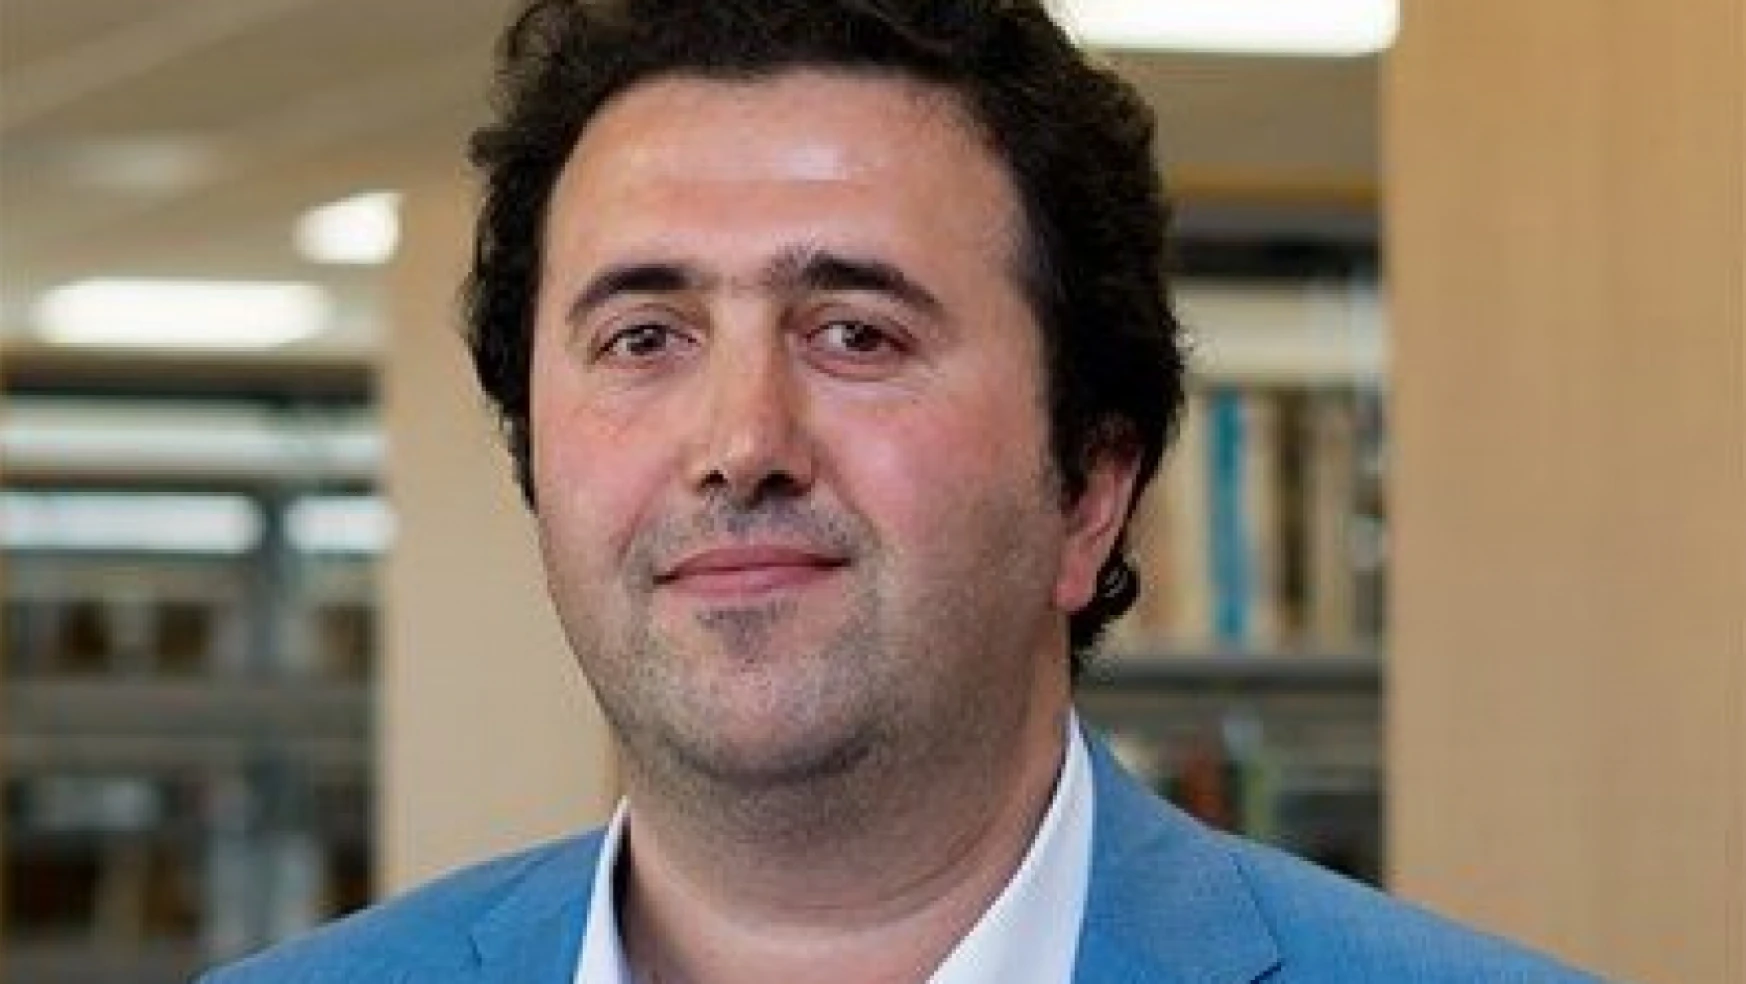 Prof. Dr. Ömer Çınar AYM üyeliğine seçildi